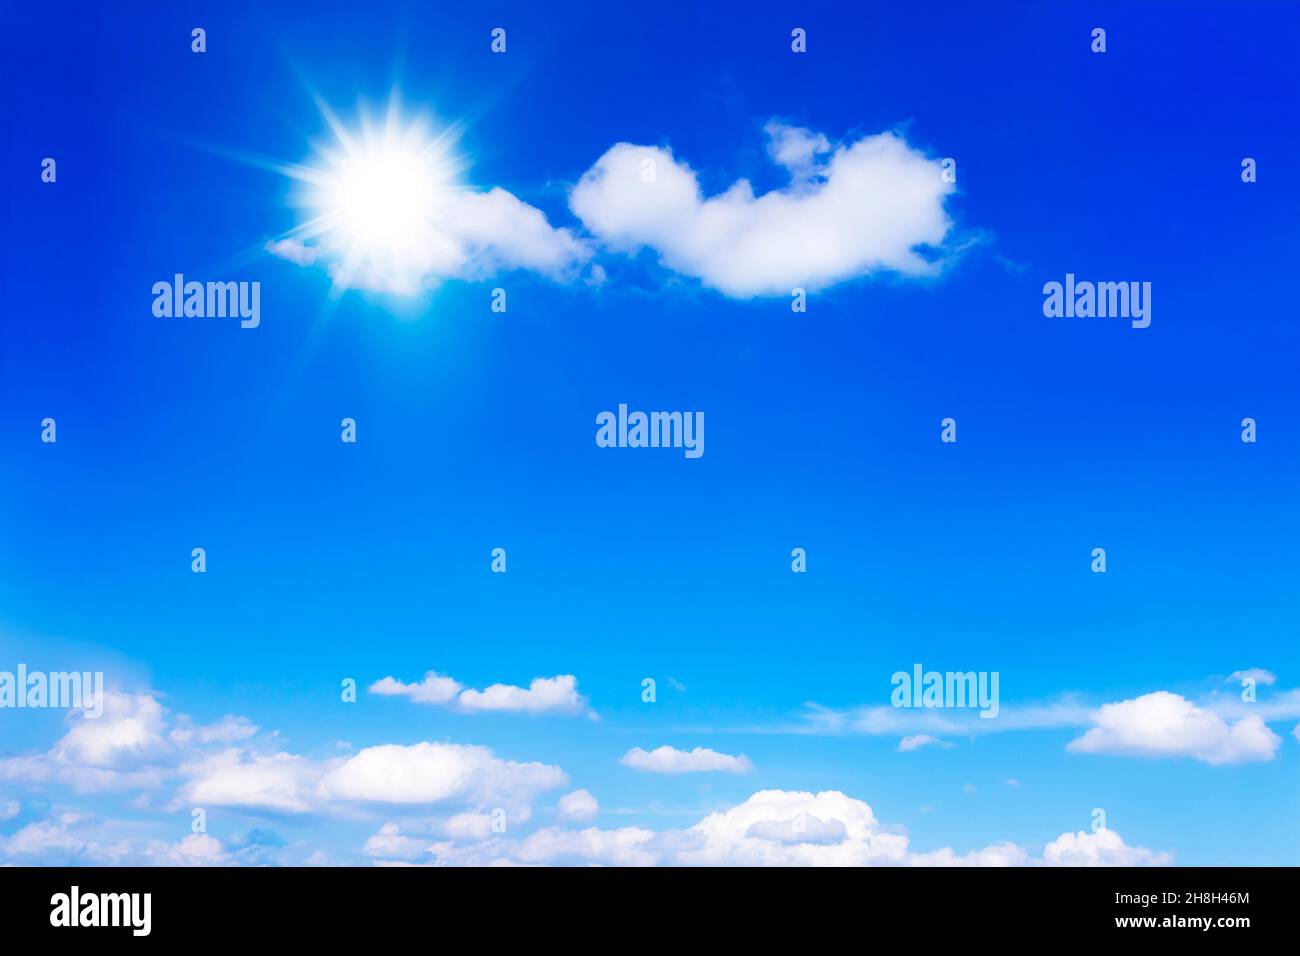 Sol de verano resplandeciente en el cielo azul brillante con unas pocas nubes esponjosas, fondo, copia o espacio de texto. Foto de stock